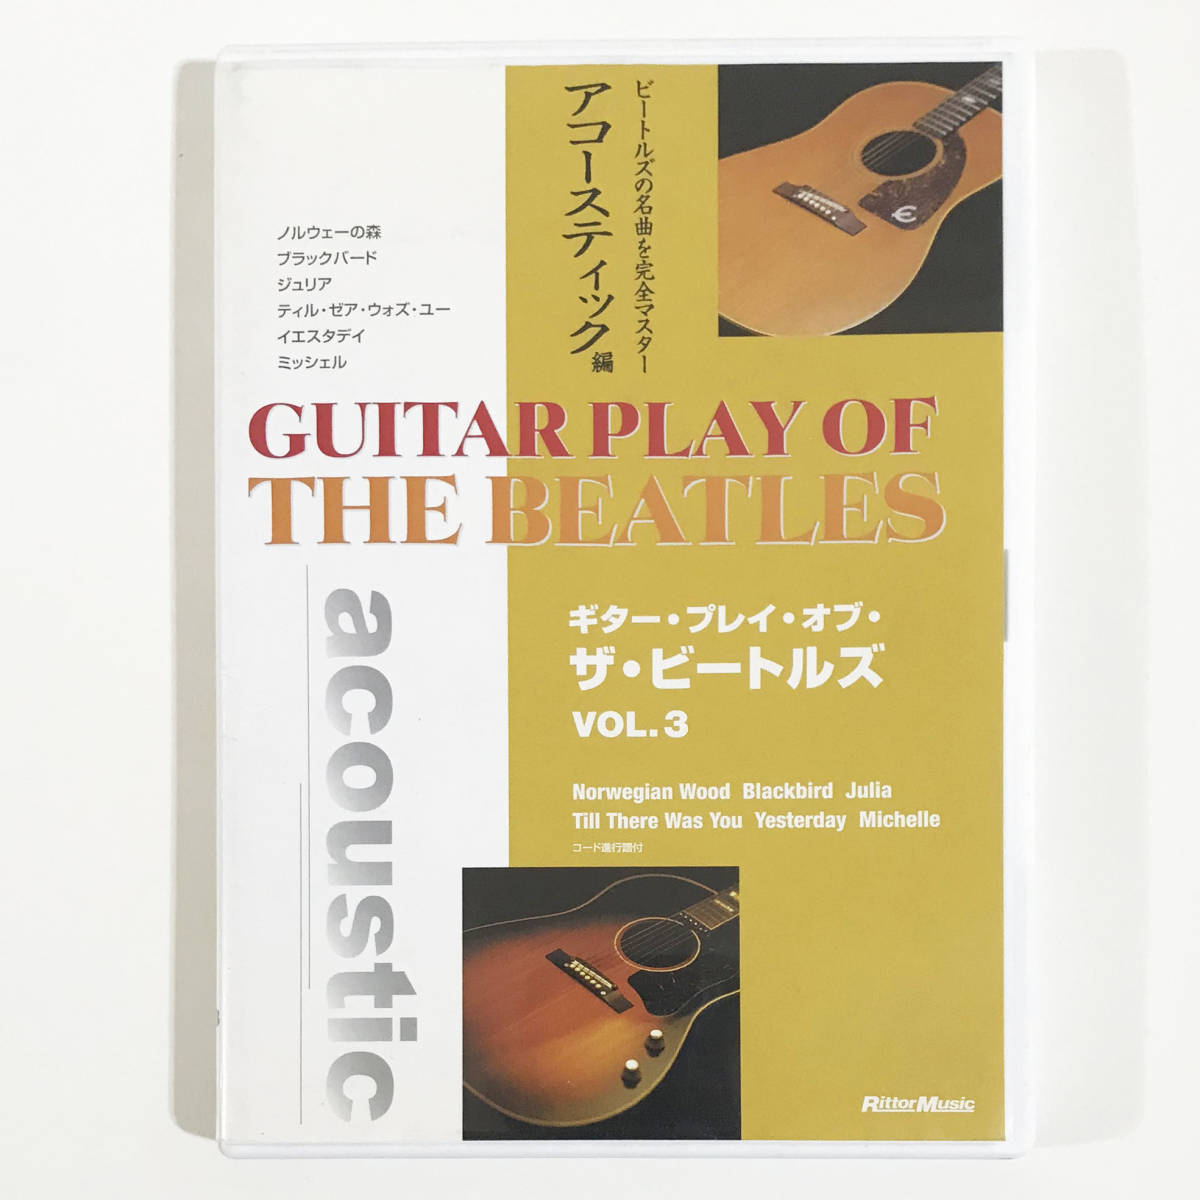 教則DVD「ギター・プレイ・オブ・ザ・ビートルズ Julia, Yesterday 